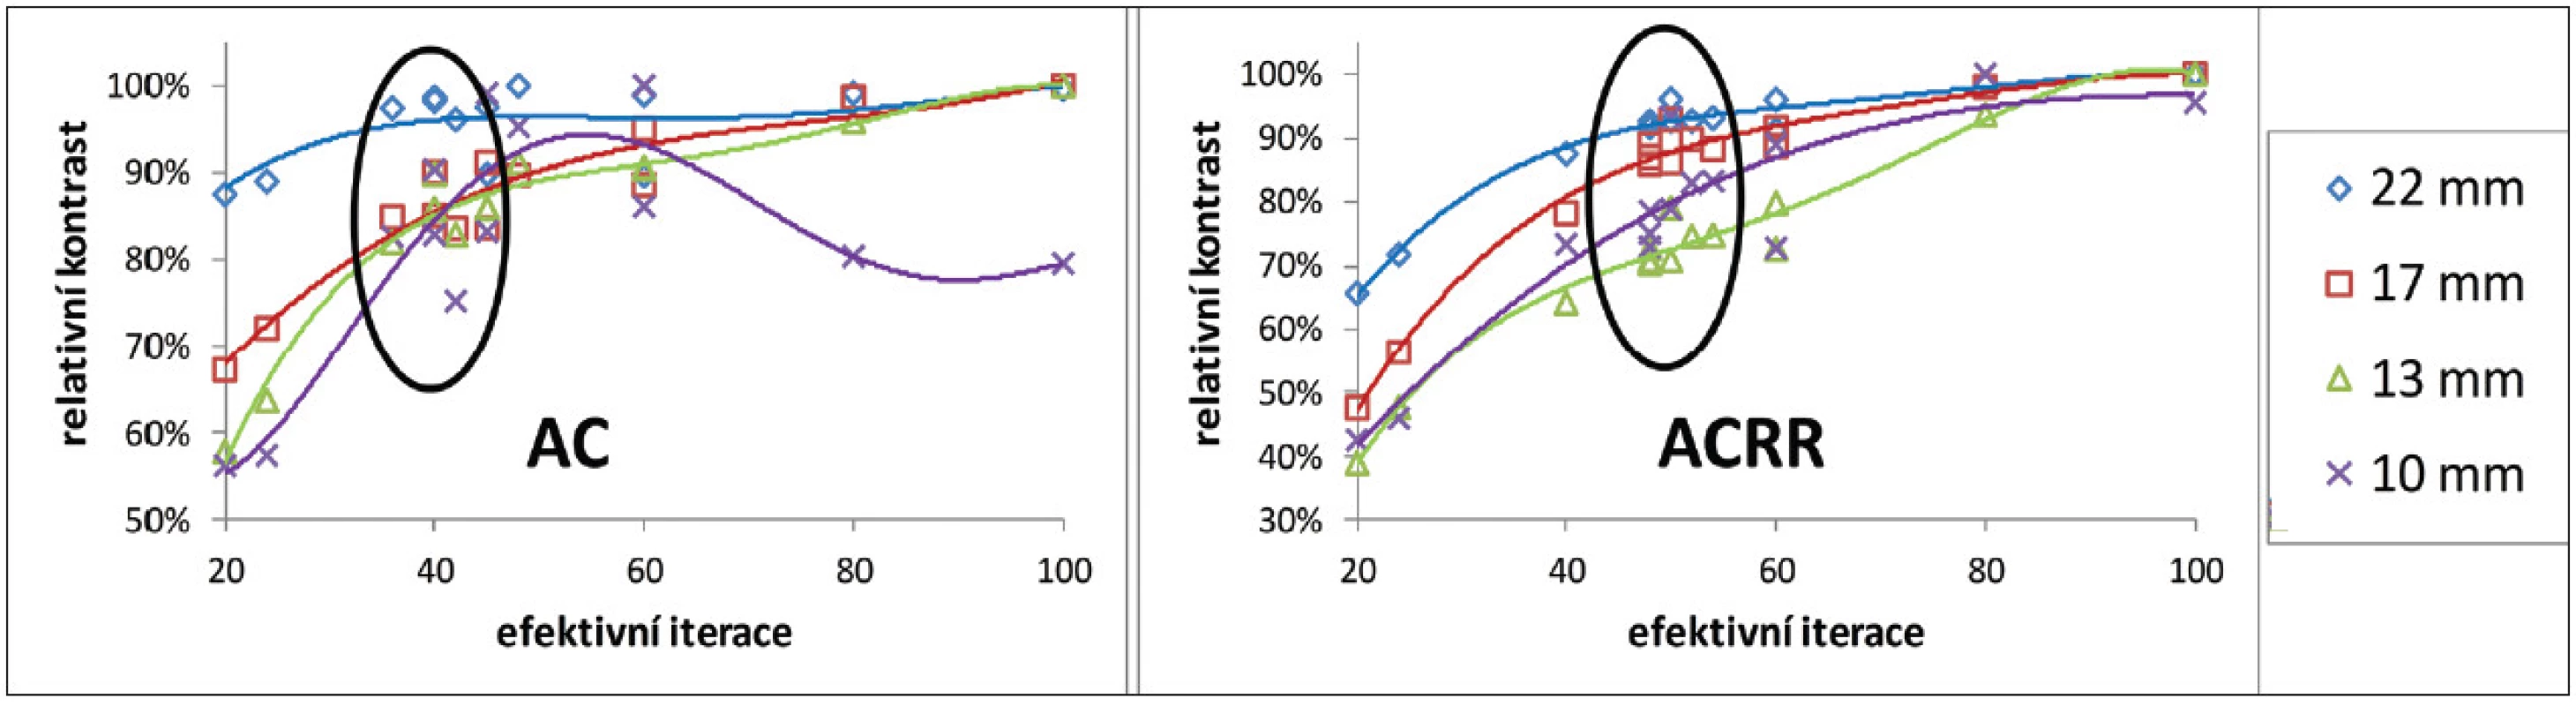 Závislost relativního kontrastu na počtu efektivních iterací pro 4 nejmenší zkoumané léze po korekci na zeslabení bez resolution recovery algoritmu (vlevo) a s ním (vpravo) z měření vysokého kontrastu na GE Discovery 630. Kontrast je normovaný na maximální změřený kontrast pro danou lézi (odpovídá 100 %). Vyznačené jsou oblasti optimálního nastavení podle optimalizační míry R&lt;sub&gt;p&lt;/sub&gt;.